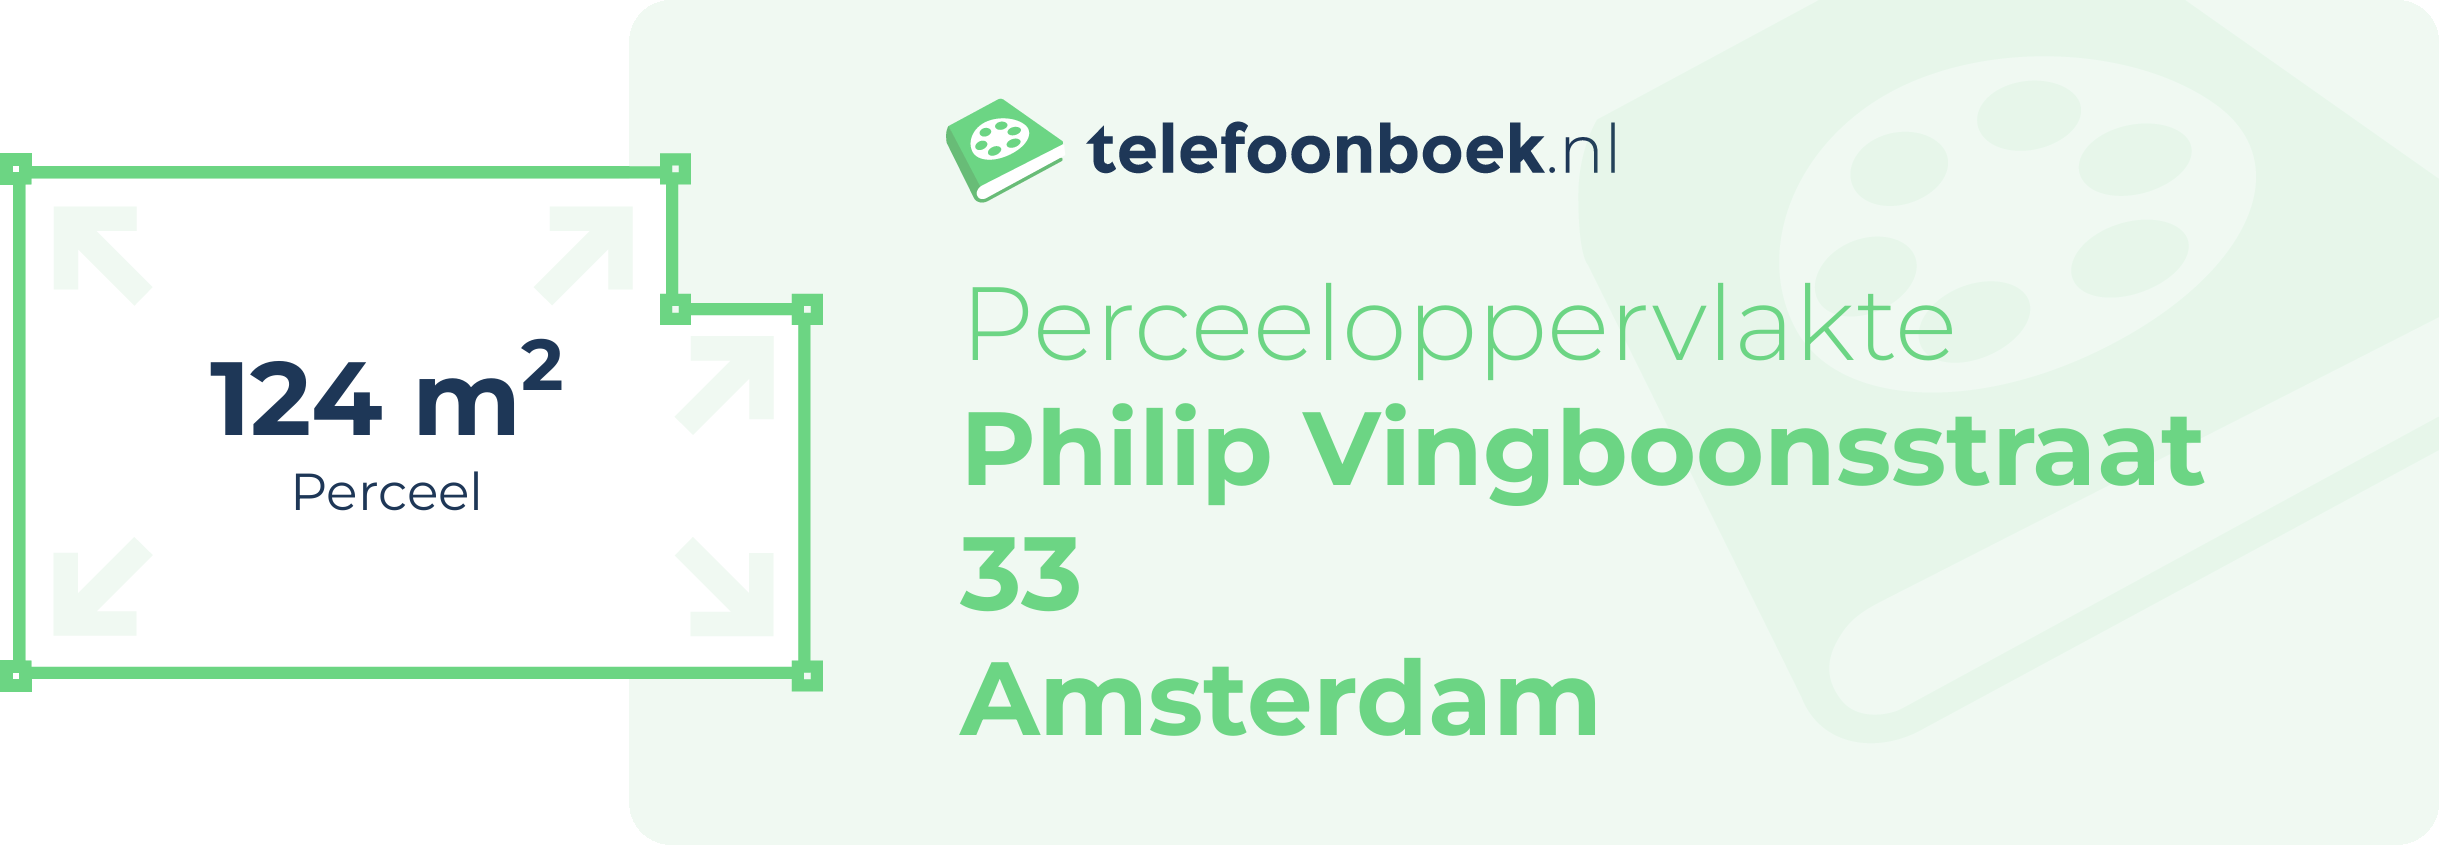 Perceeloppervlakte Philip Vingboonsstraat 33 Amsterdam